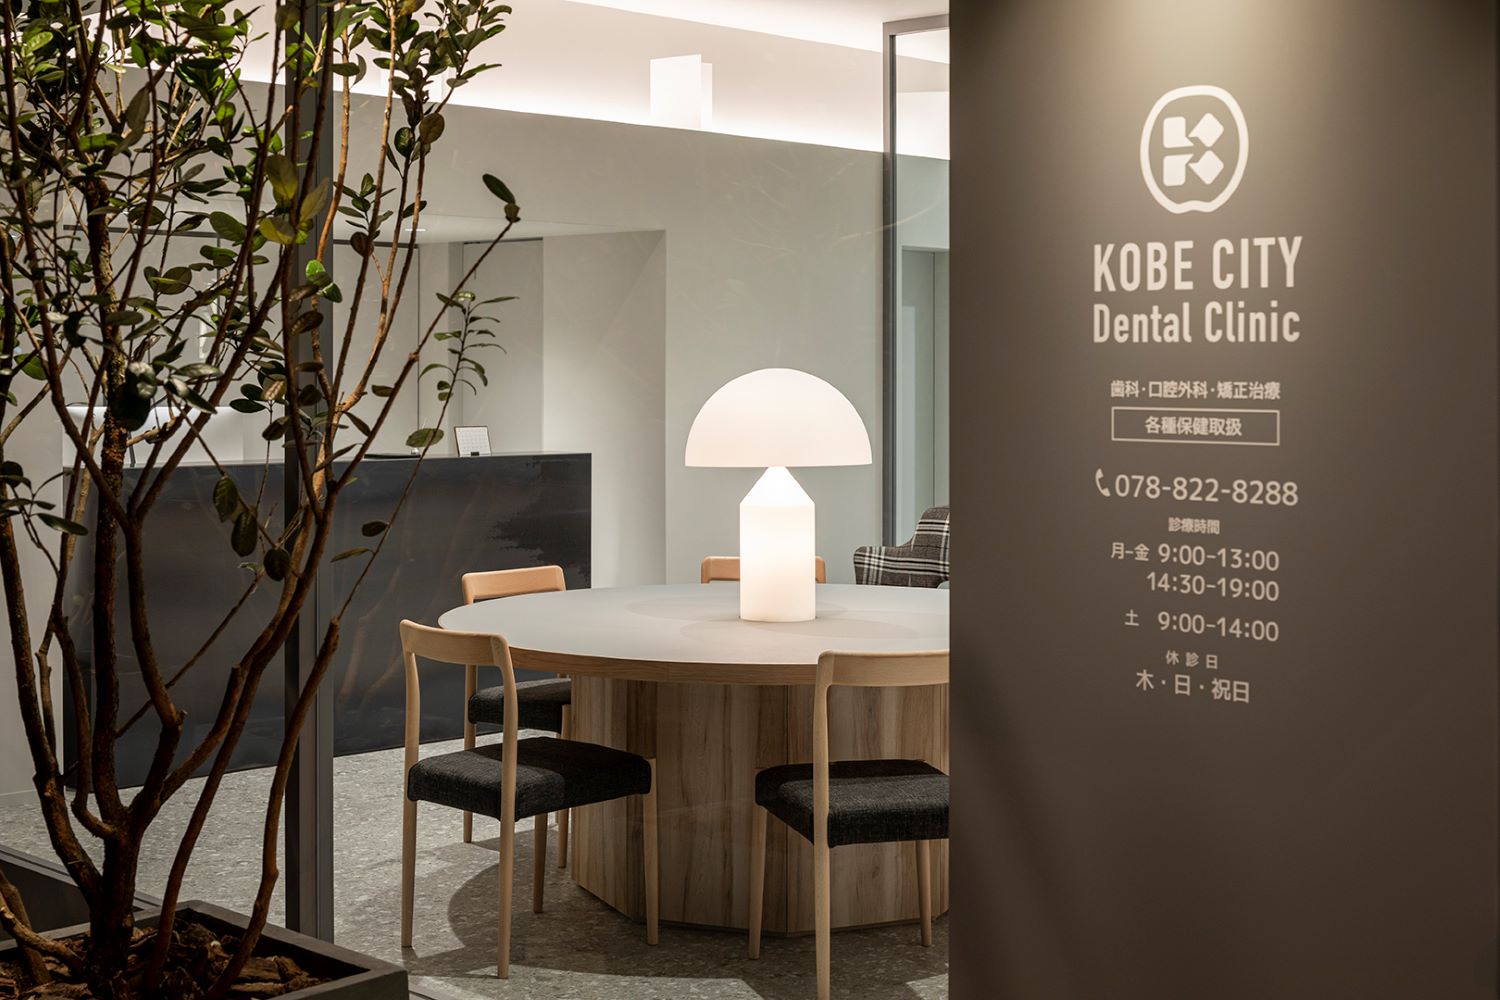 歯科医院の内装デザイン・内装設計・建築デザインを、45年以上のキャリアを持つジョイントセンターがクリエイティブな発想でご提案いたします。人に優しく衛生的な歯科デザインで、ブランド作りを意識したデンタルクリニックをサポートいたします。